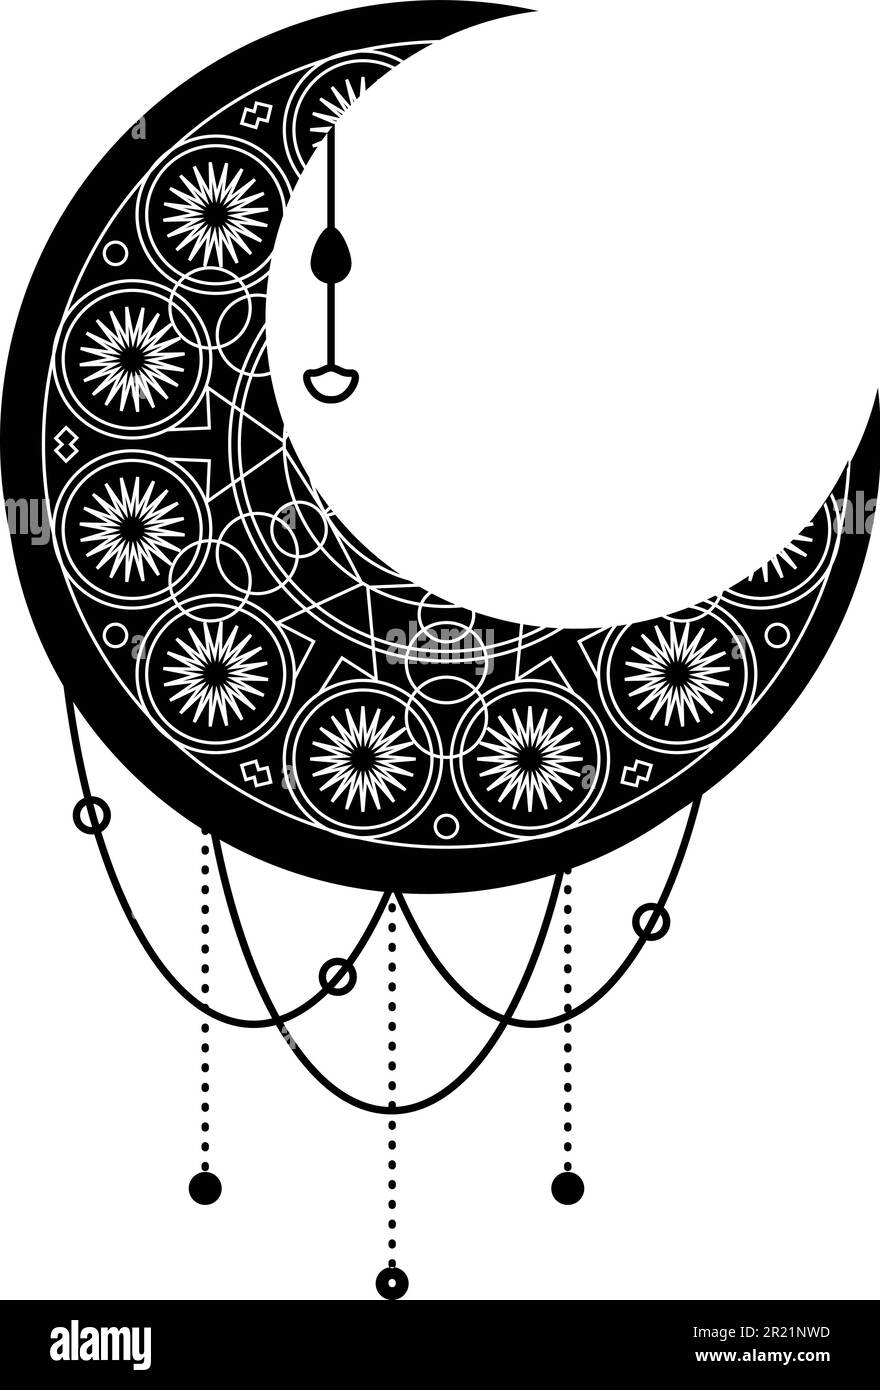 Lune noire, symbole croissant avec ornement décoratif. Symbole mystique de style boho. Magic spa, manucure, élément de magasin de bijoux. Vecteur sacré signe isol Illustration de Vecteur